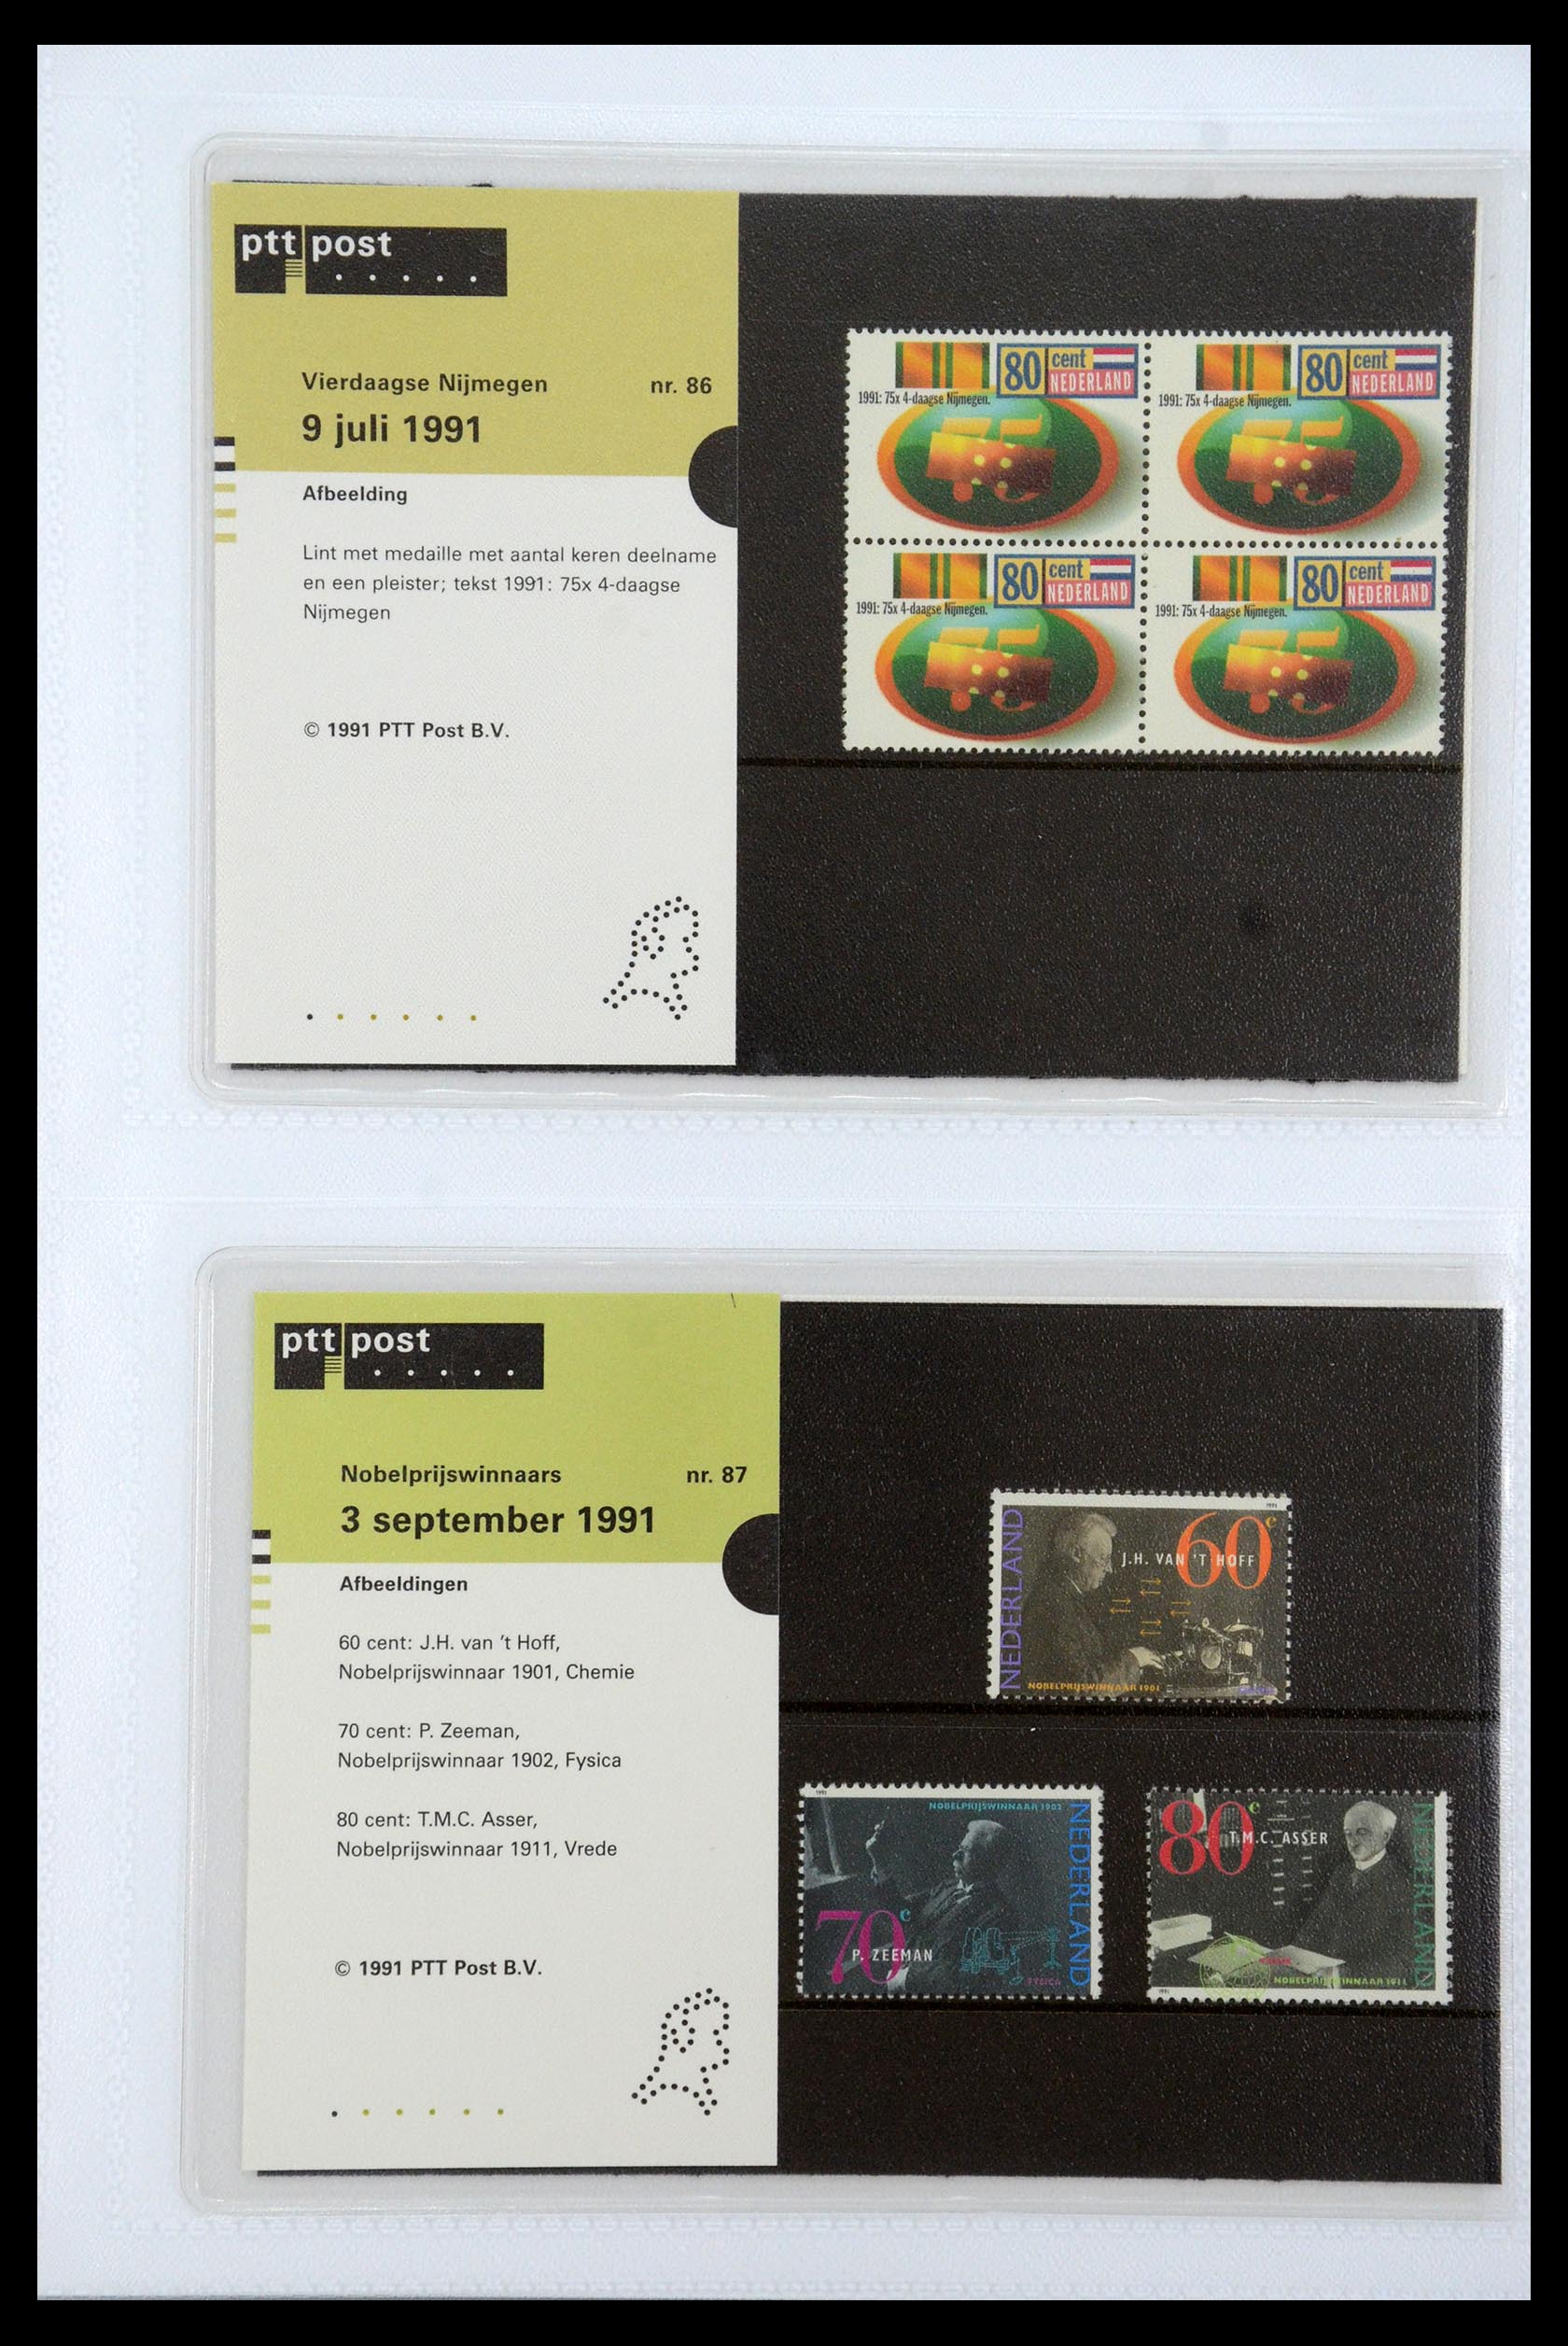 35947 044 - Stamp Collection 35947 Netherlands PTT presentation packs 1982-2019!